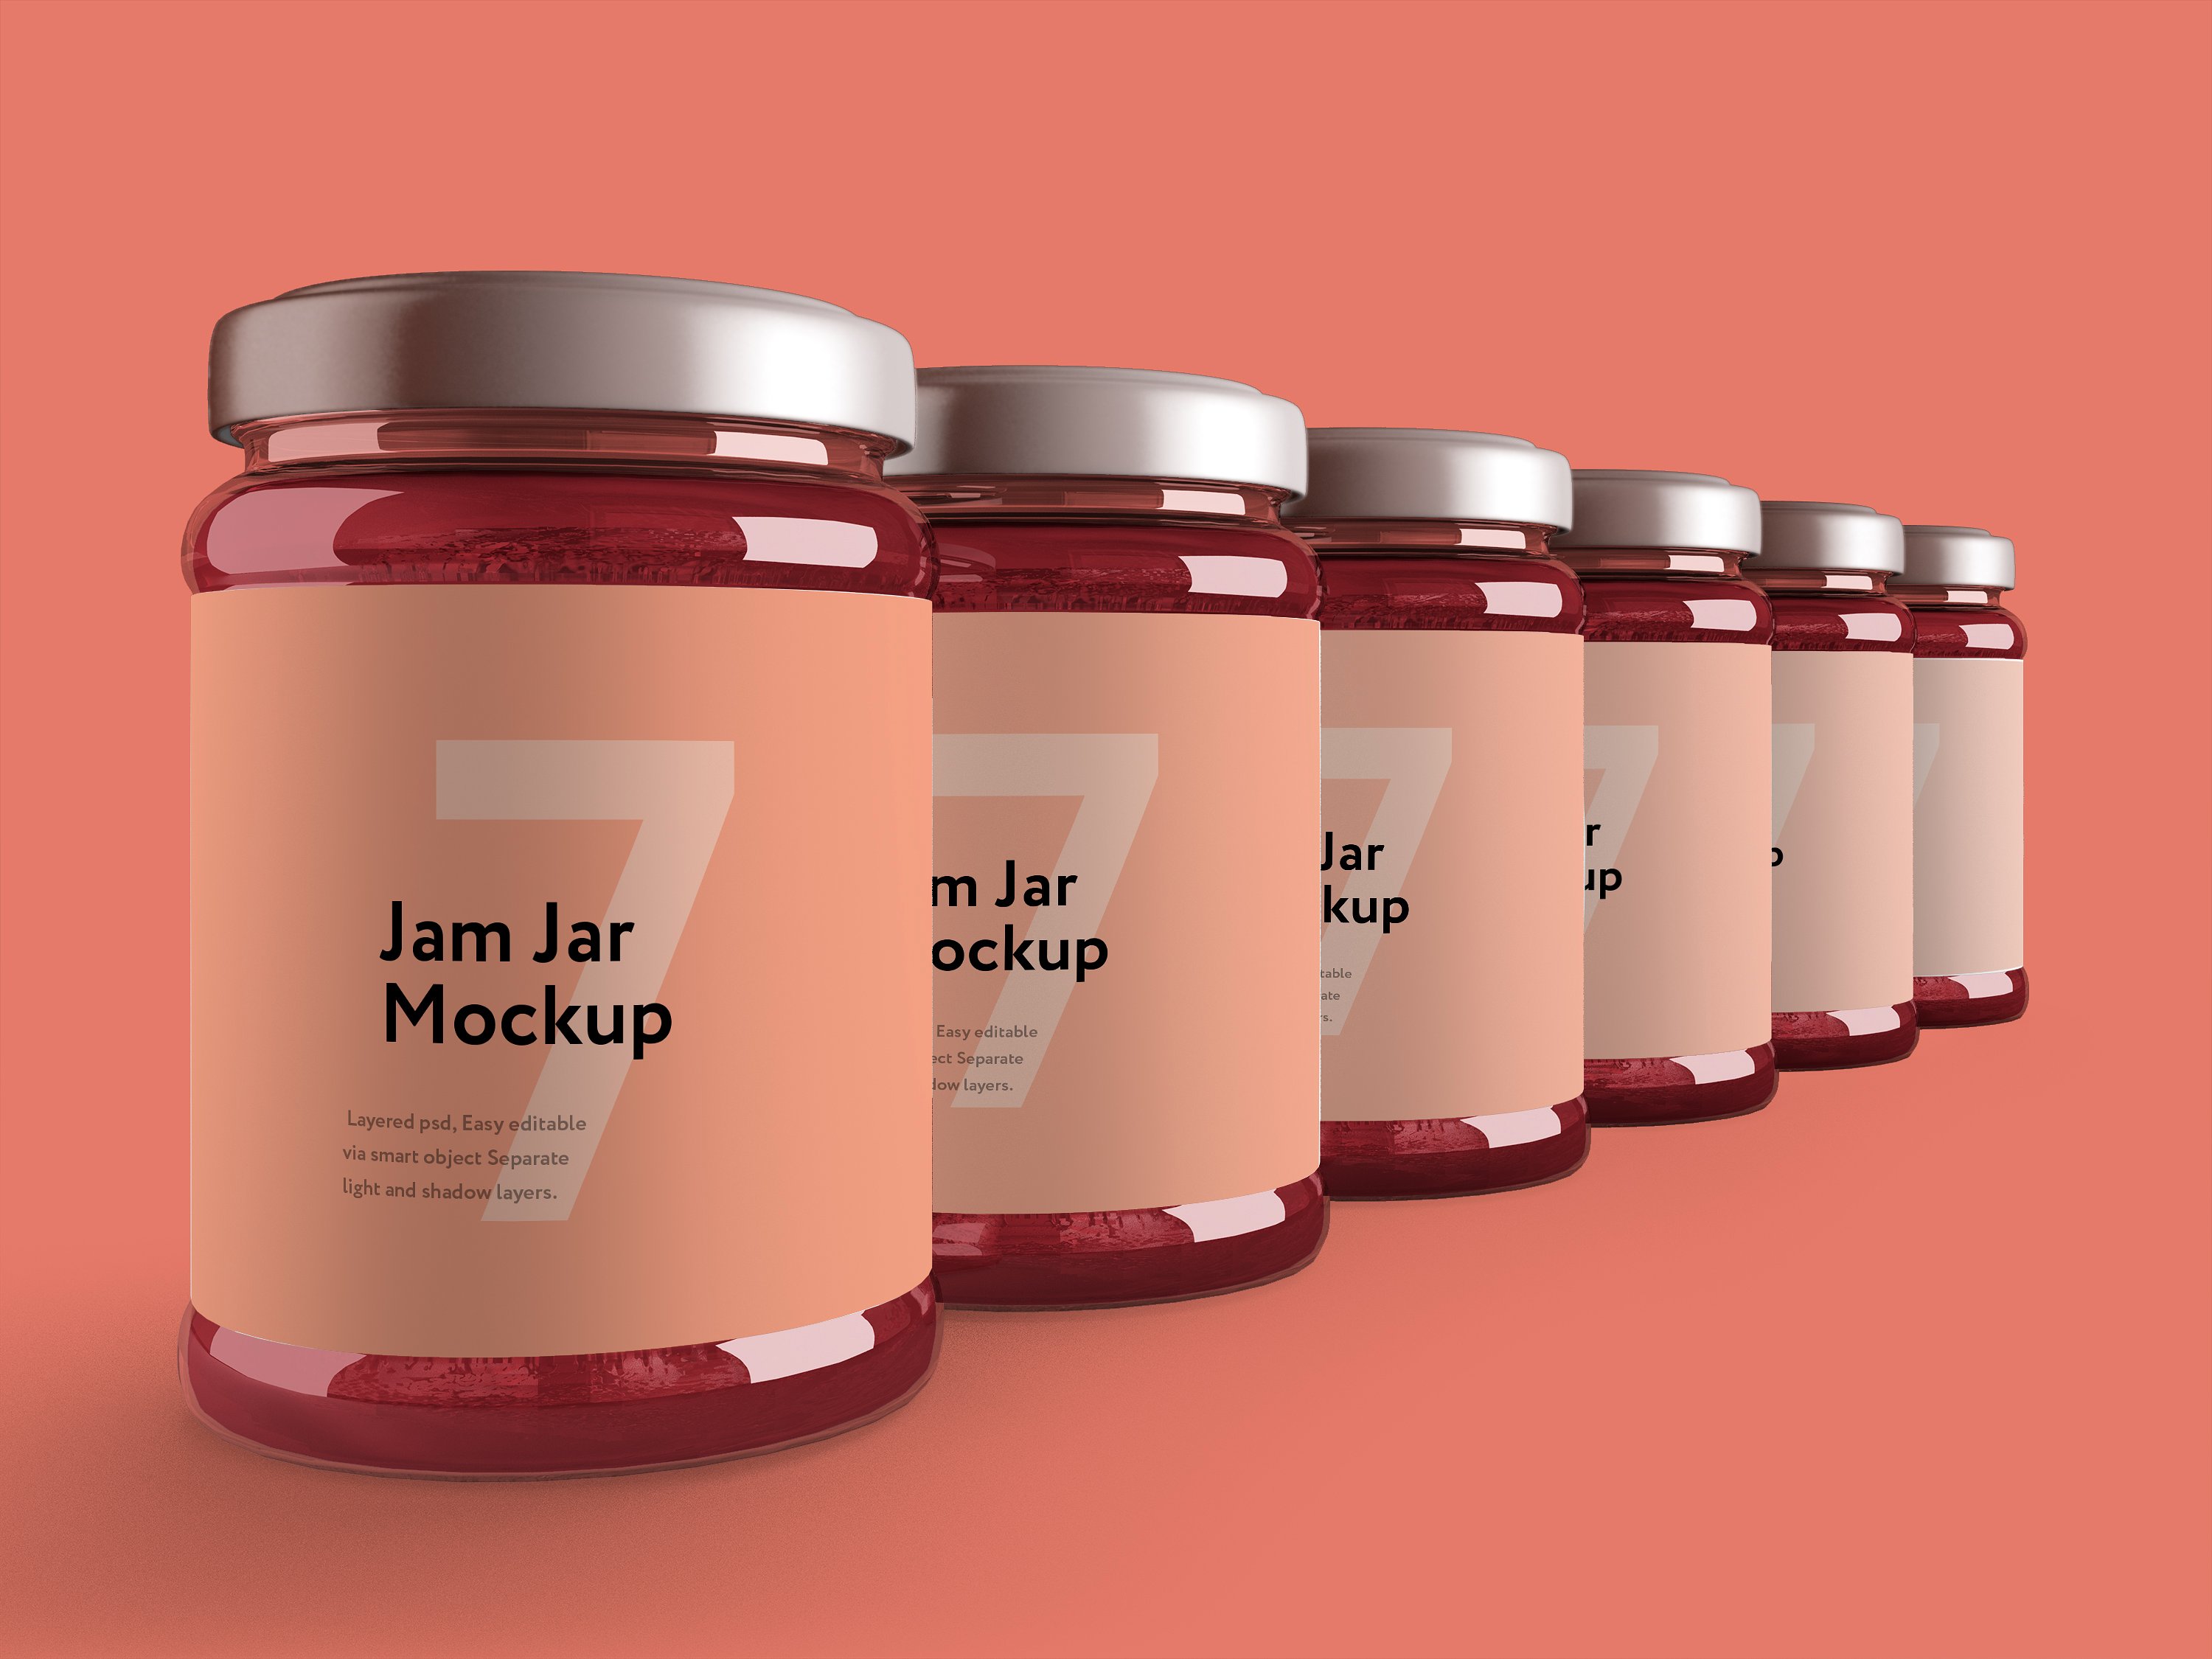 粉色果酱玻璃瓶外观设计效果图样机模板 Jam Jar Mockup插图6